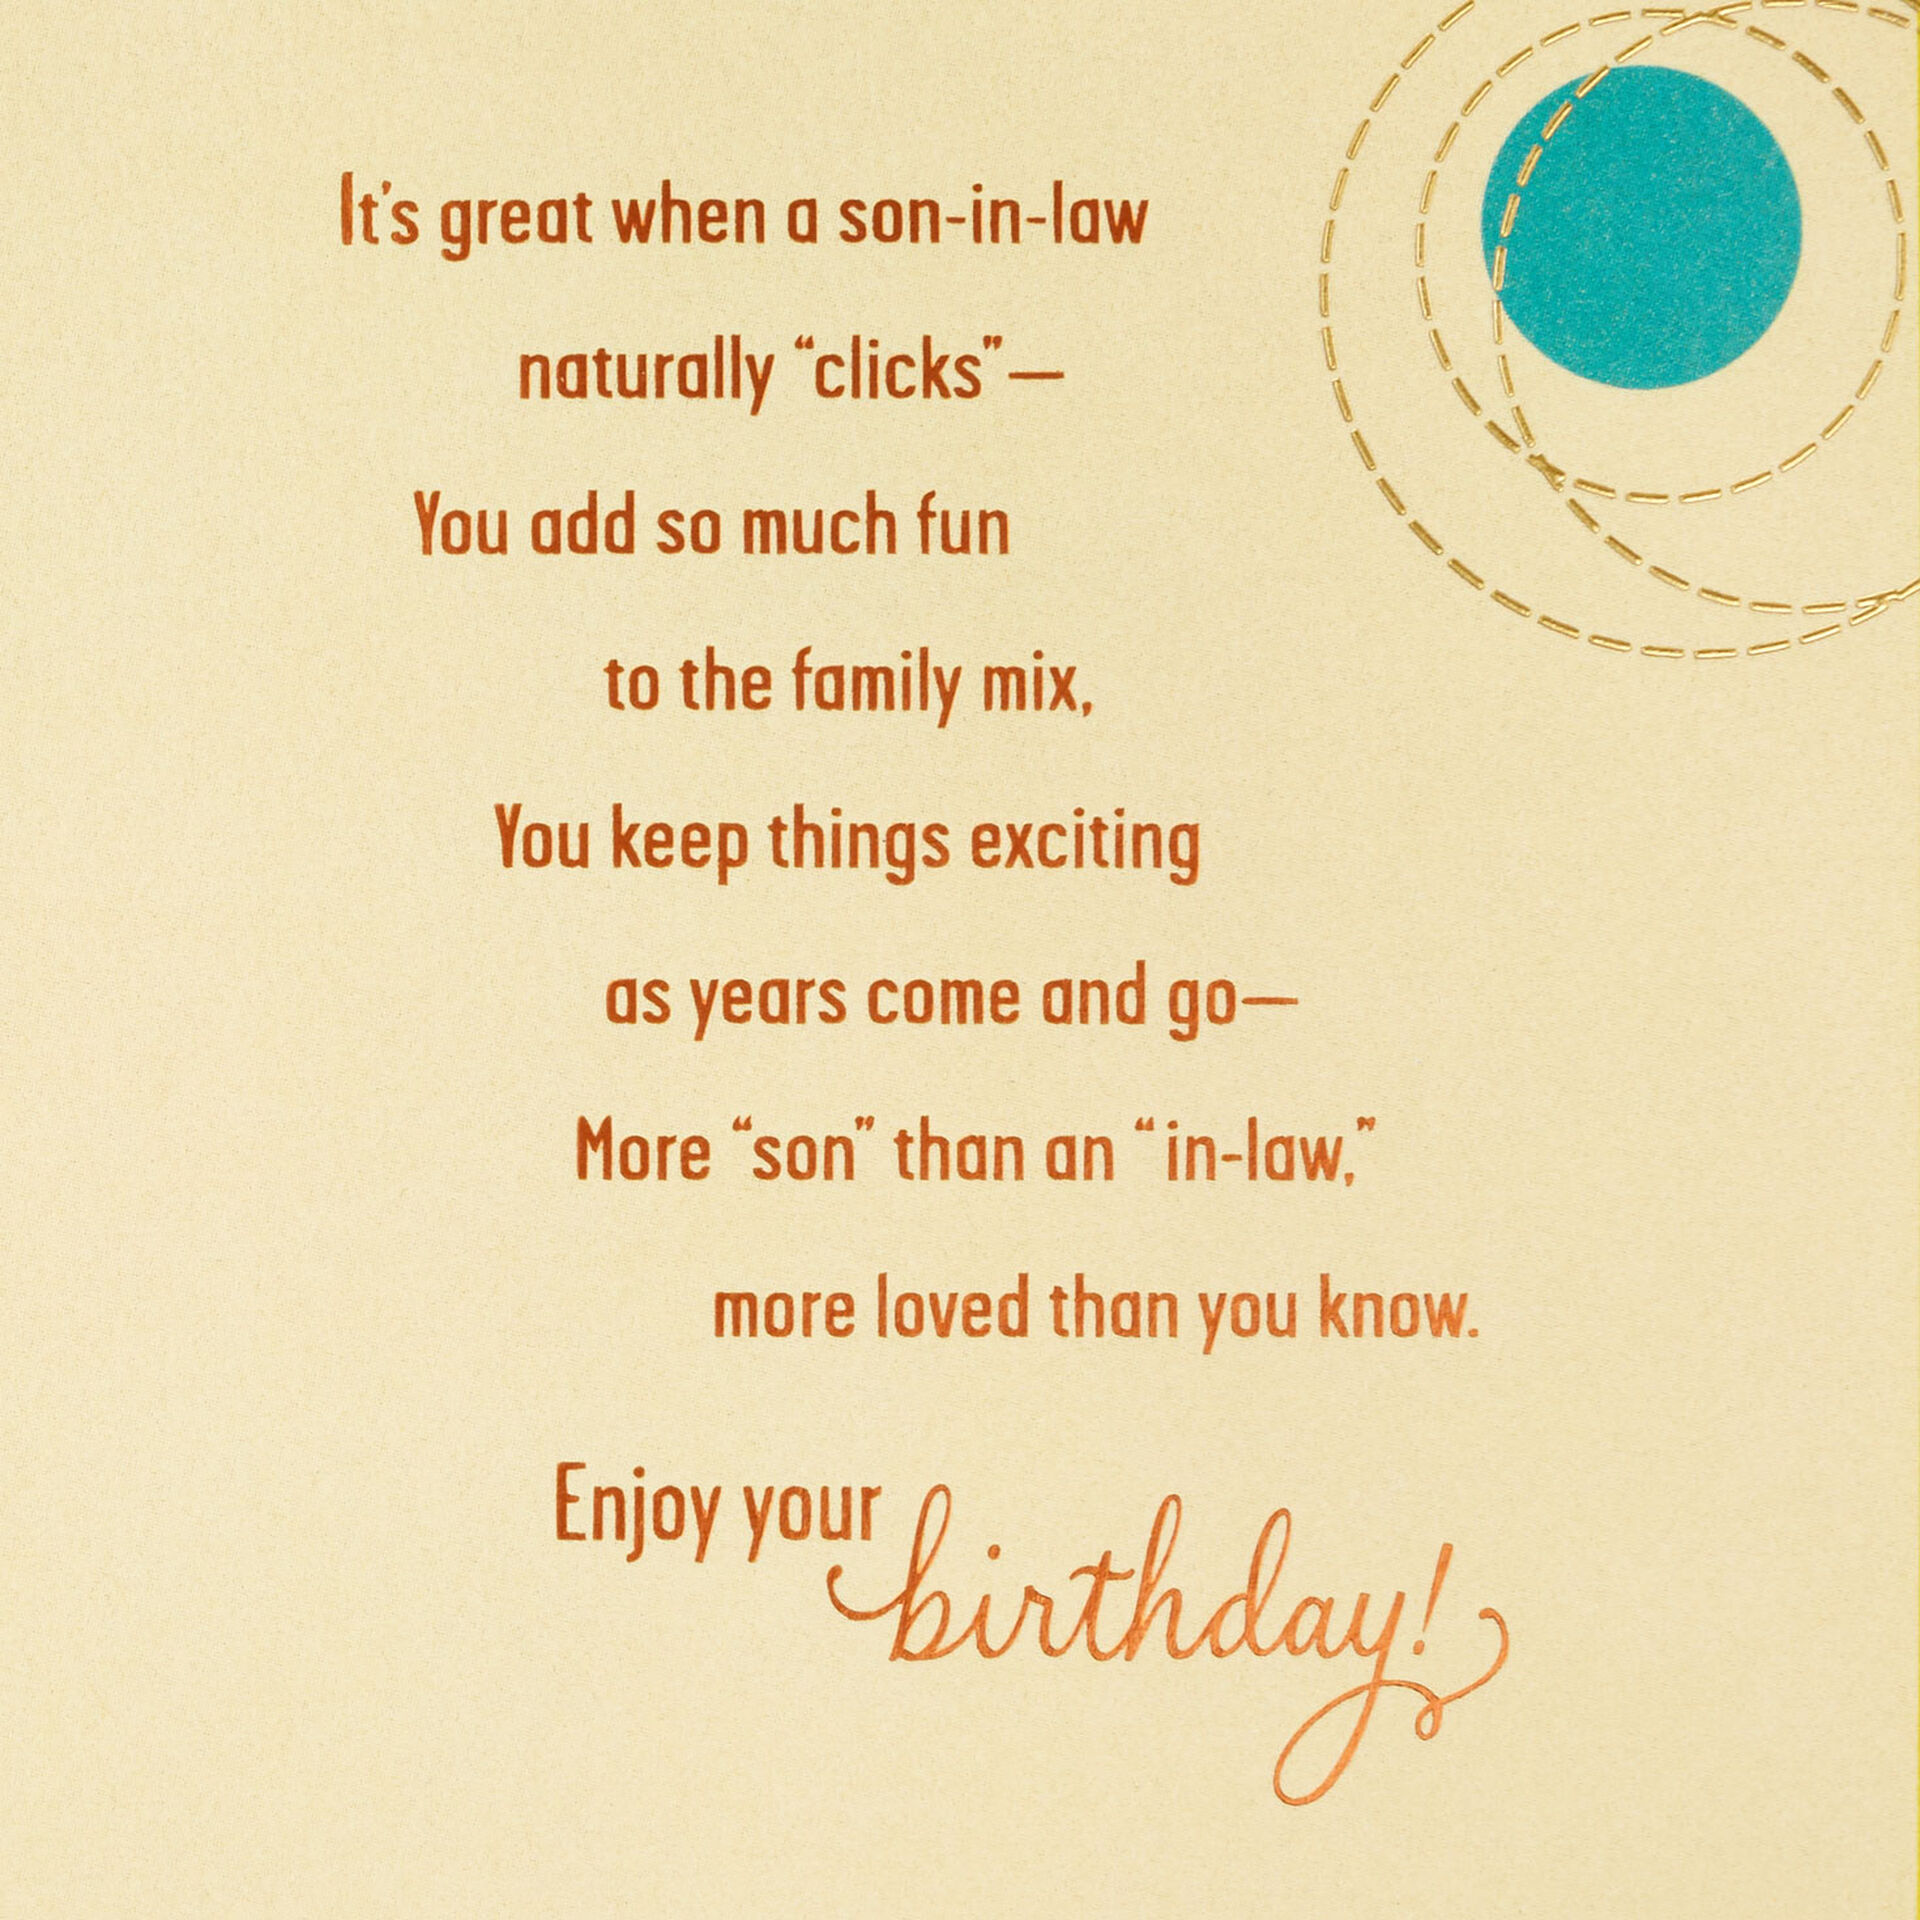 Fun-Circles-on-Canvas-Birthday-Card-for-SoninLaw_759MAN4127_02